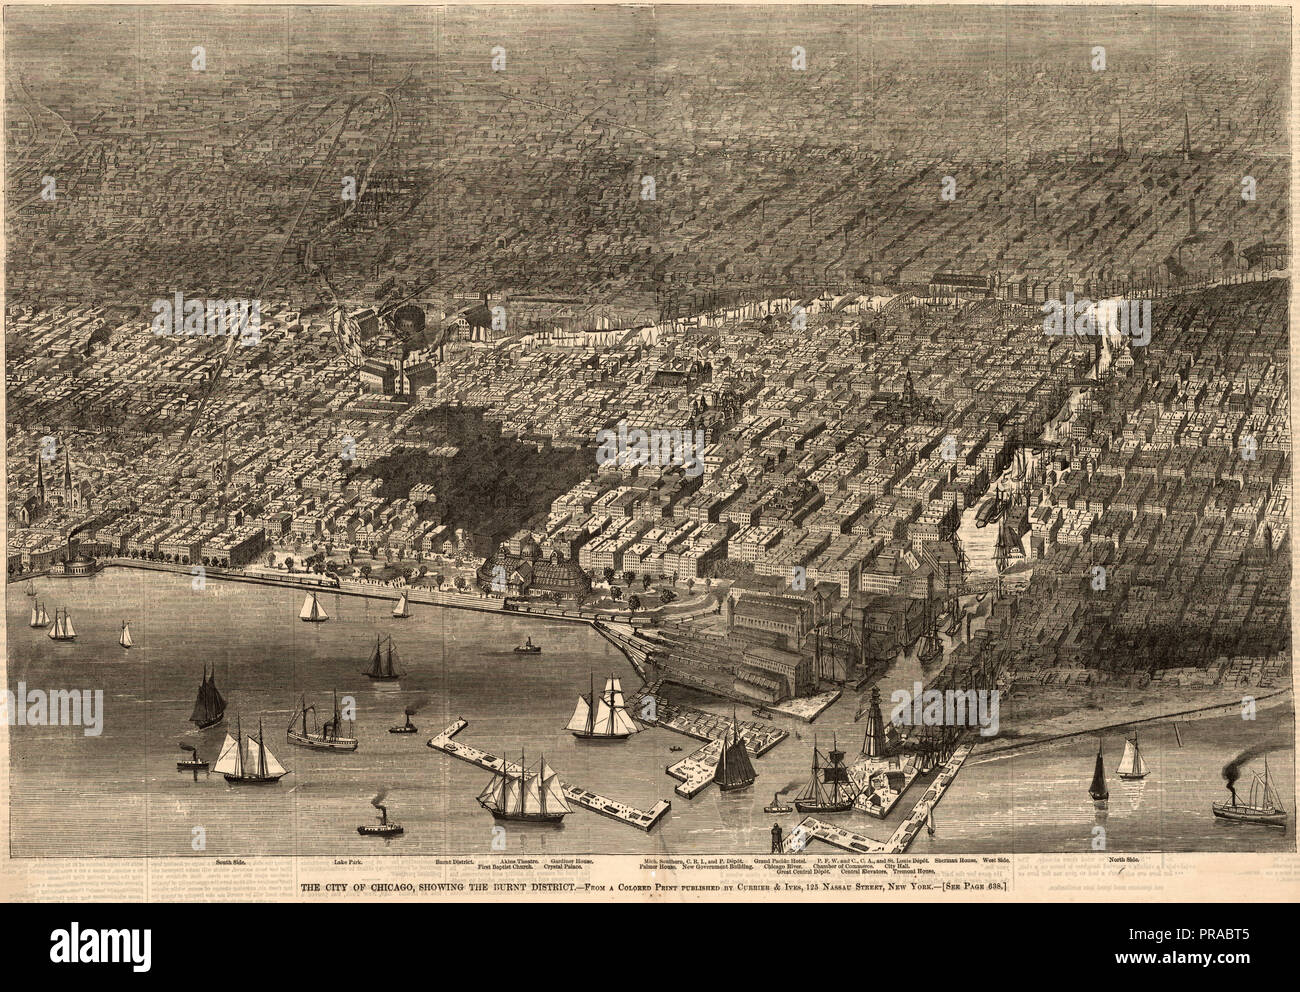 Die Stadt Chicago, zeigt die verbrannten District, ca. 1874 Stockfoto